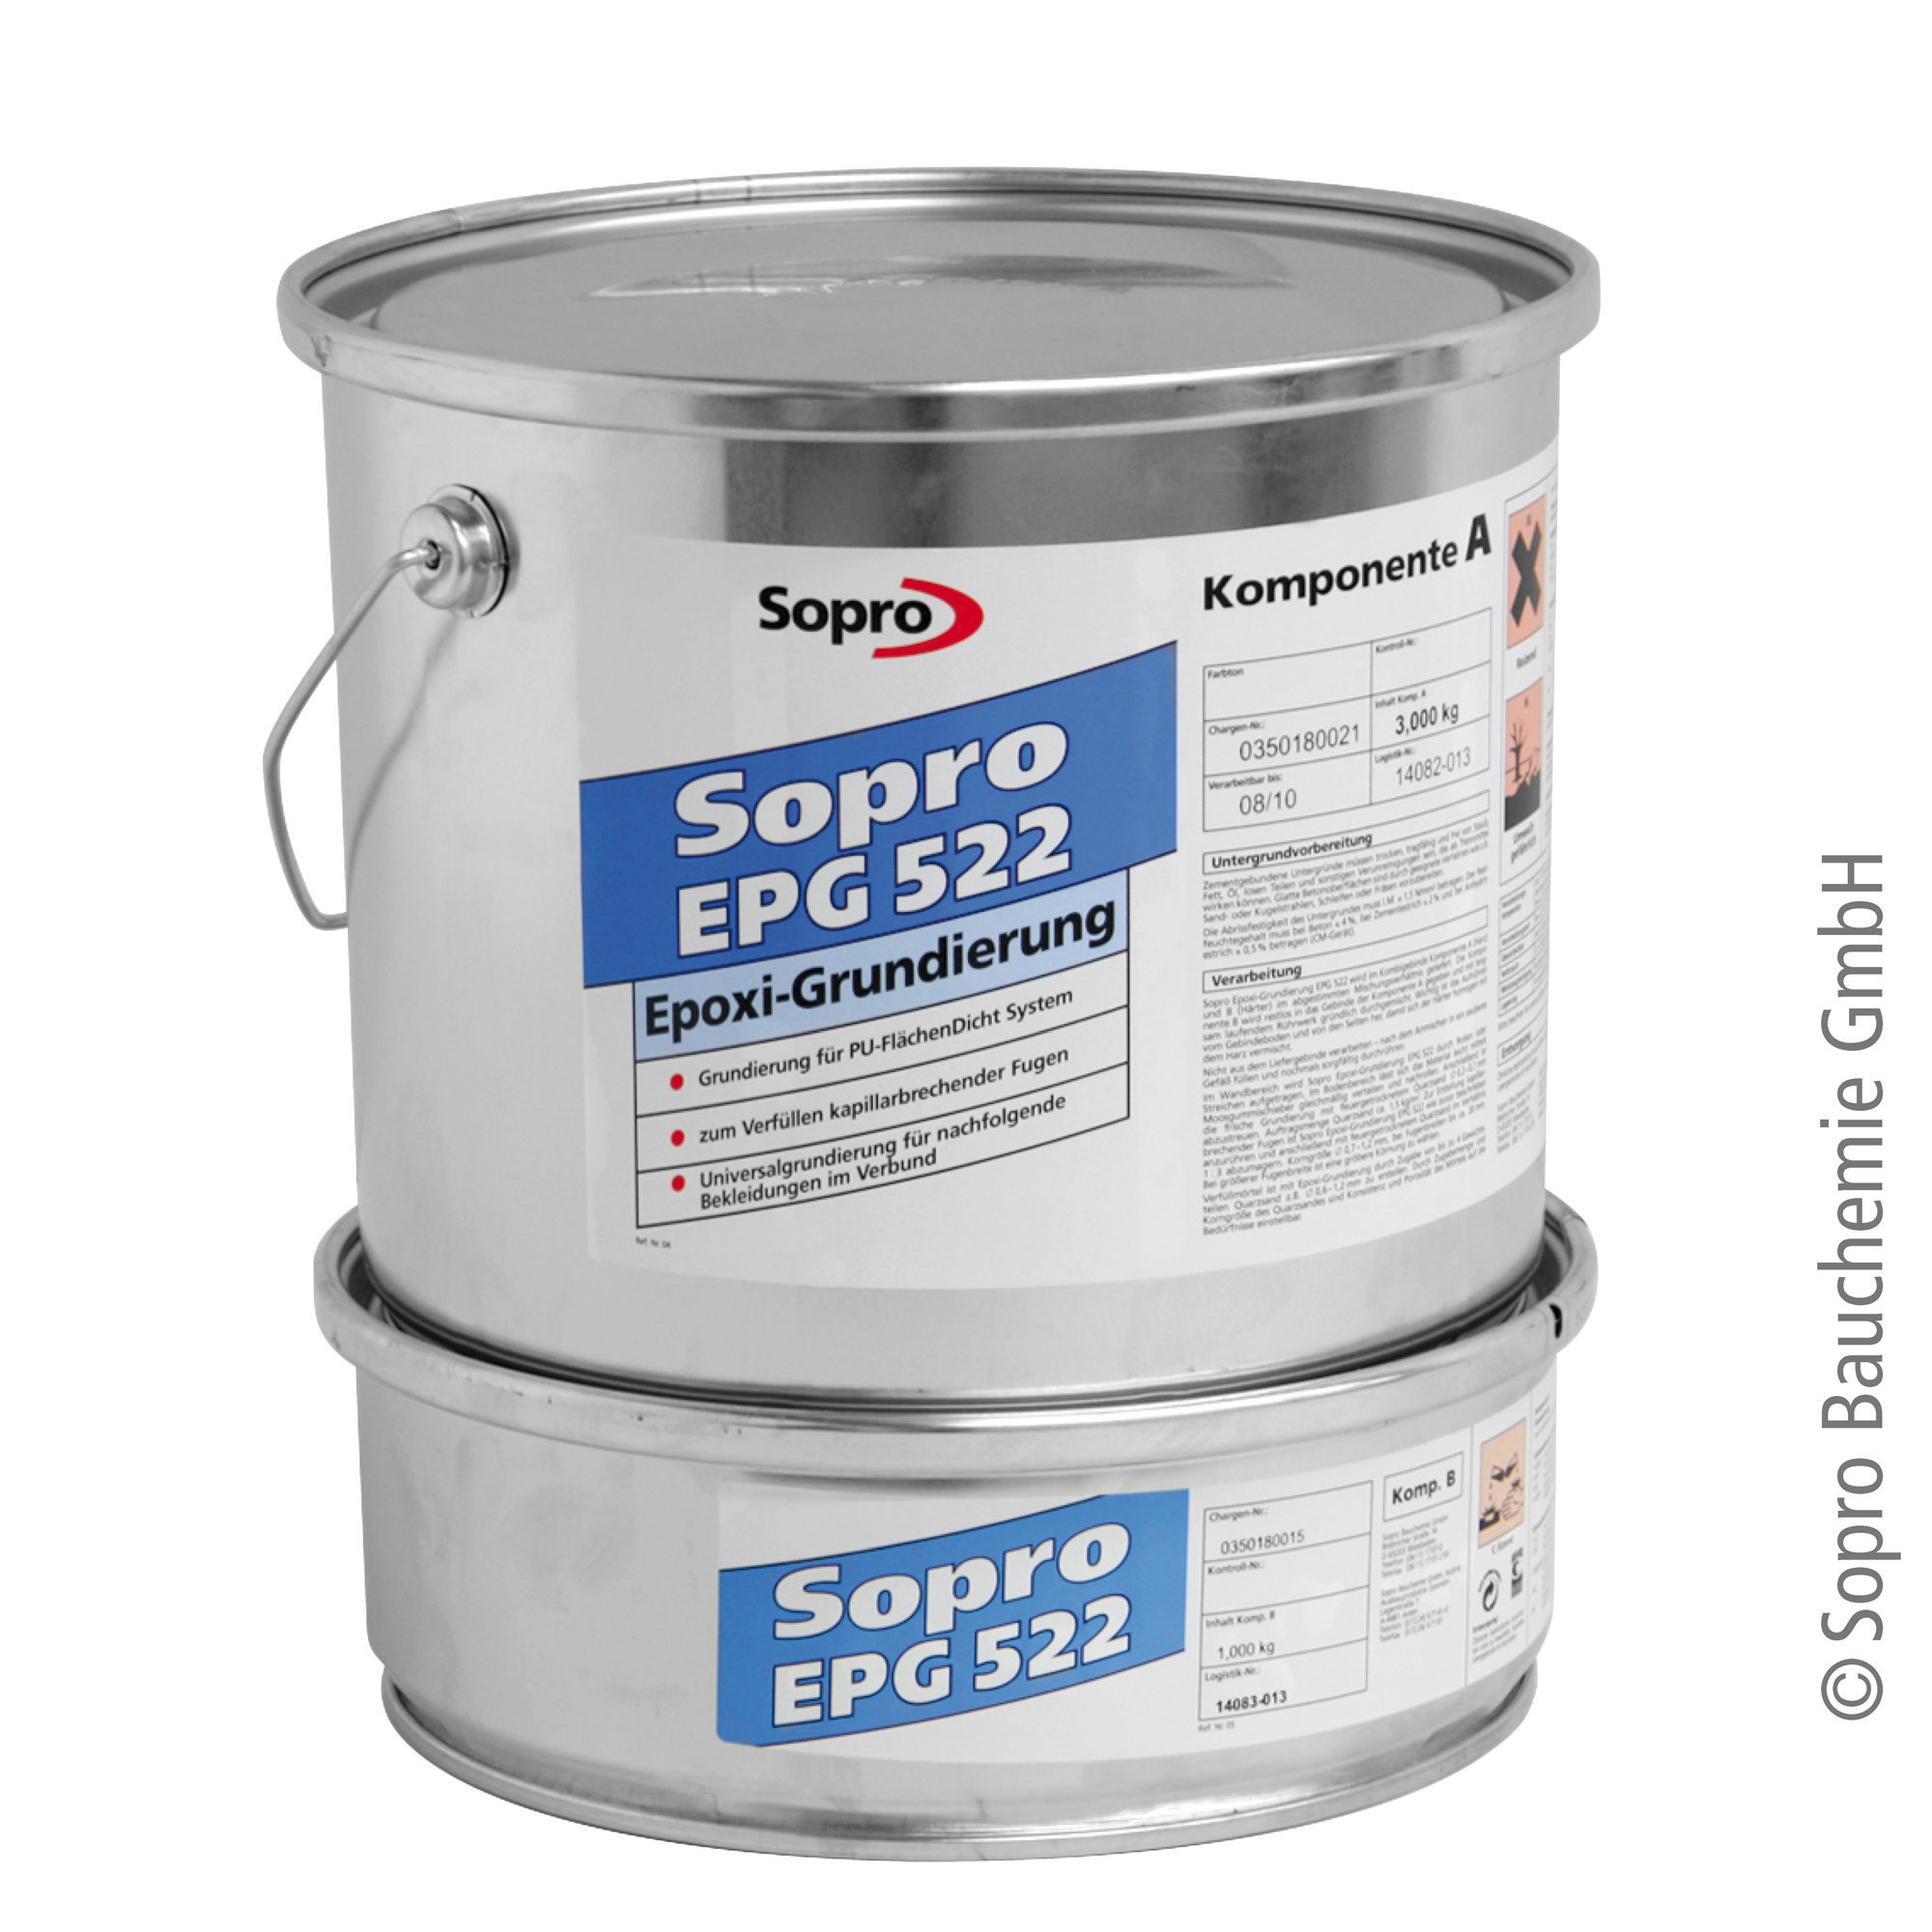 Sopro Epoxi-Grundierung EPG 522